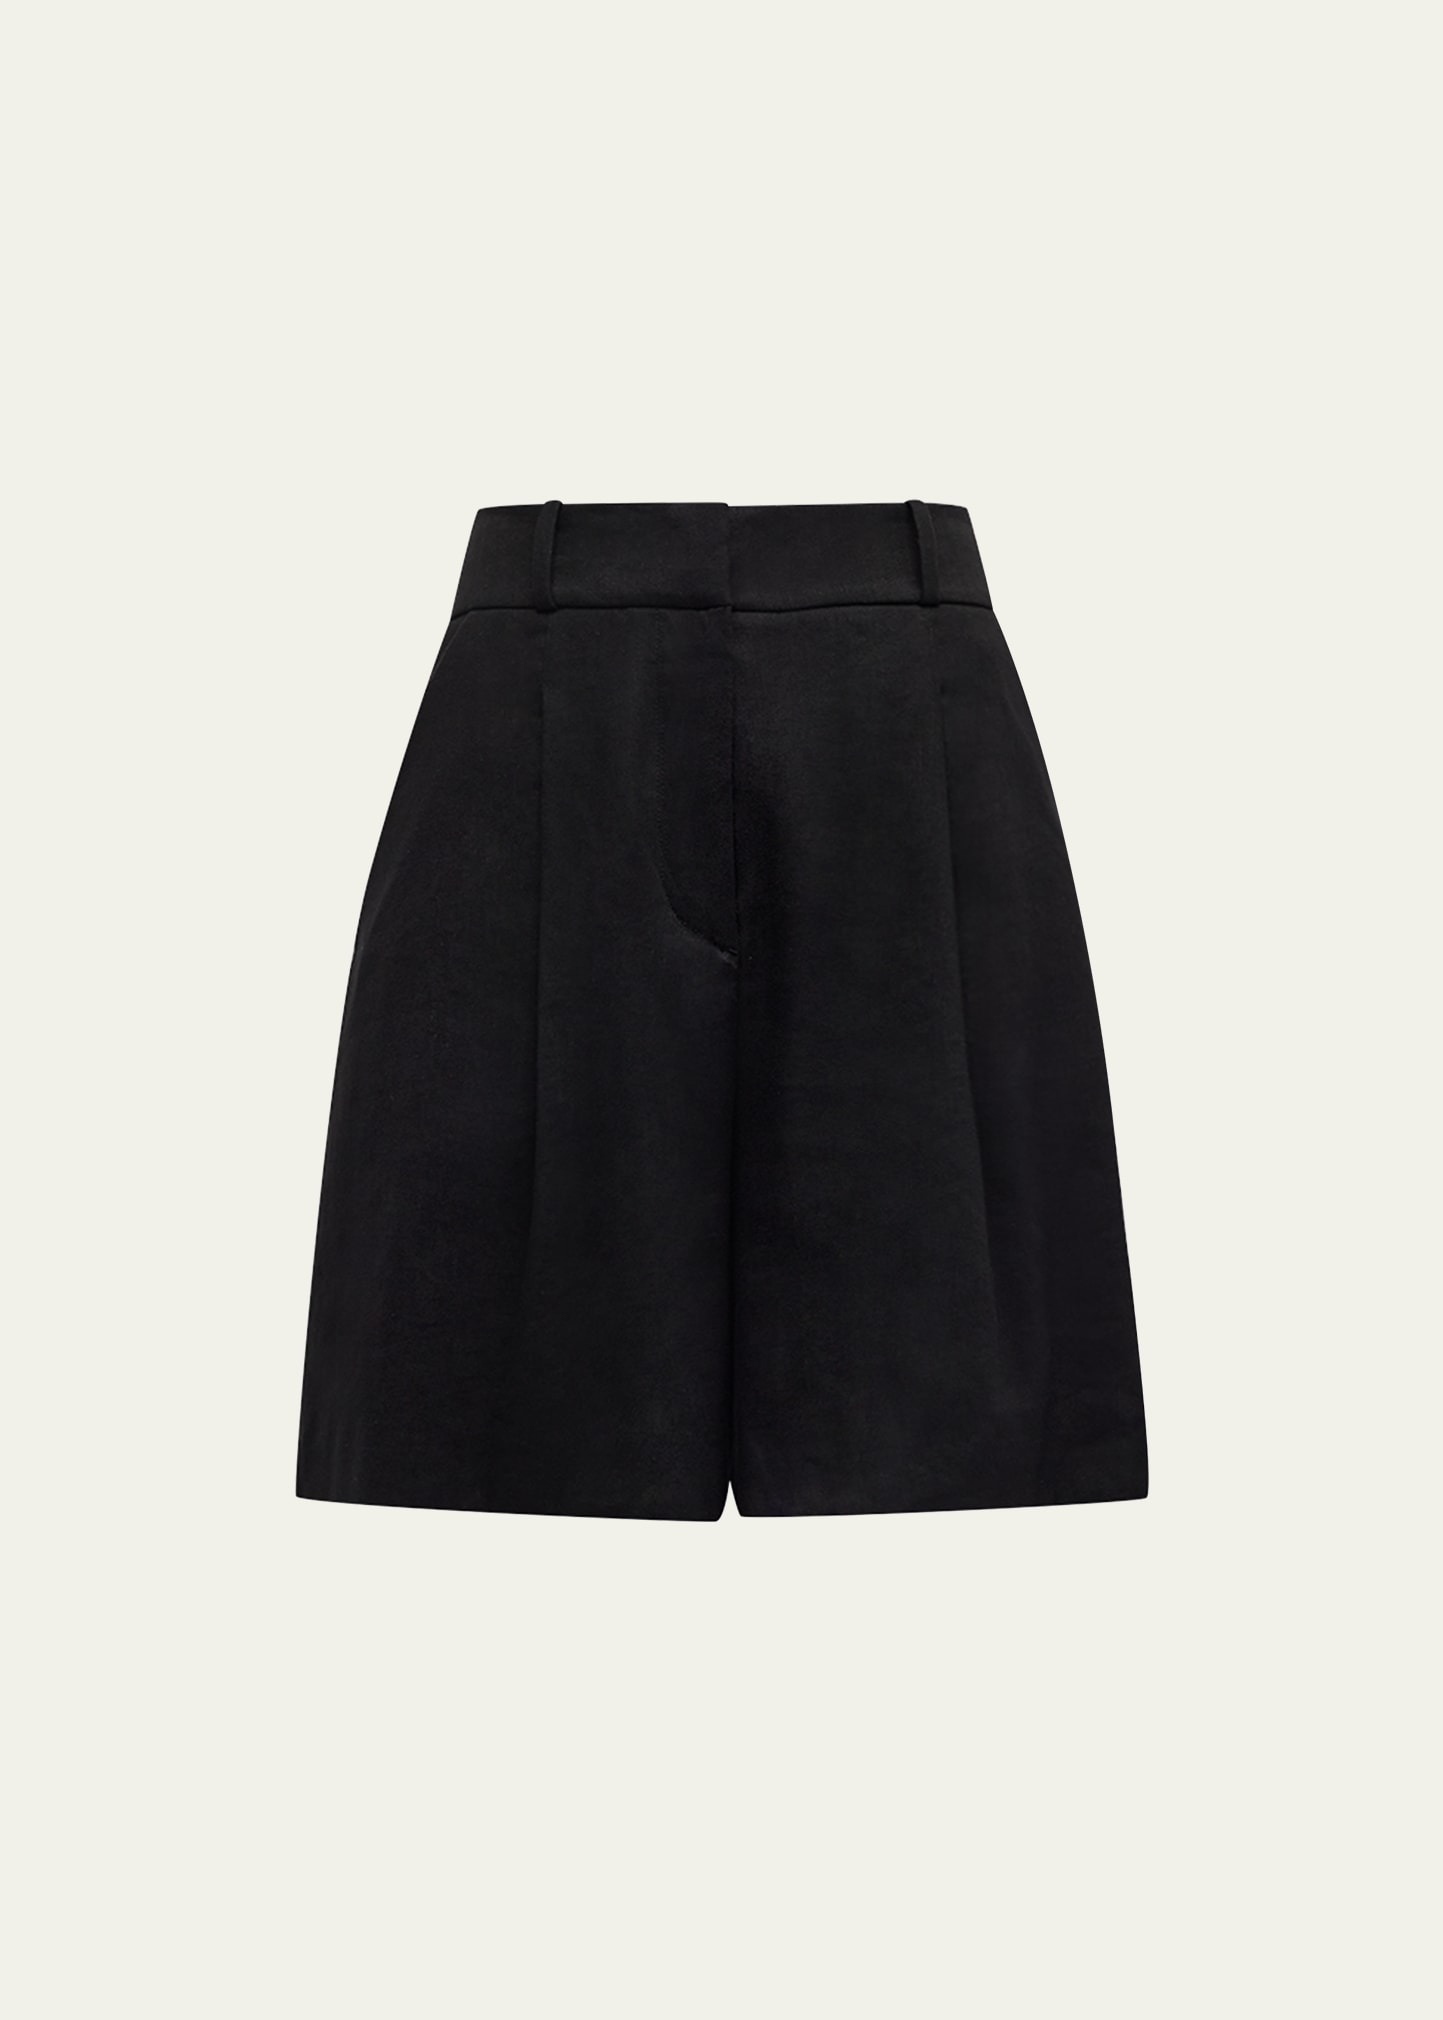 Noemi Pleated Linen Shorts